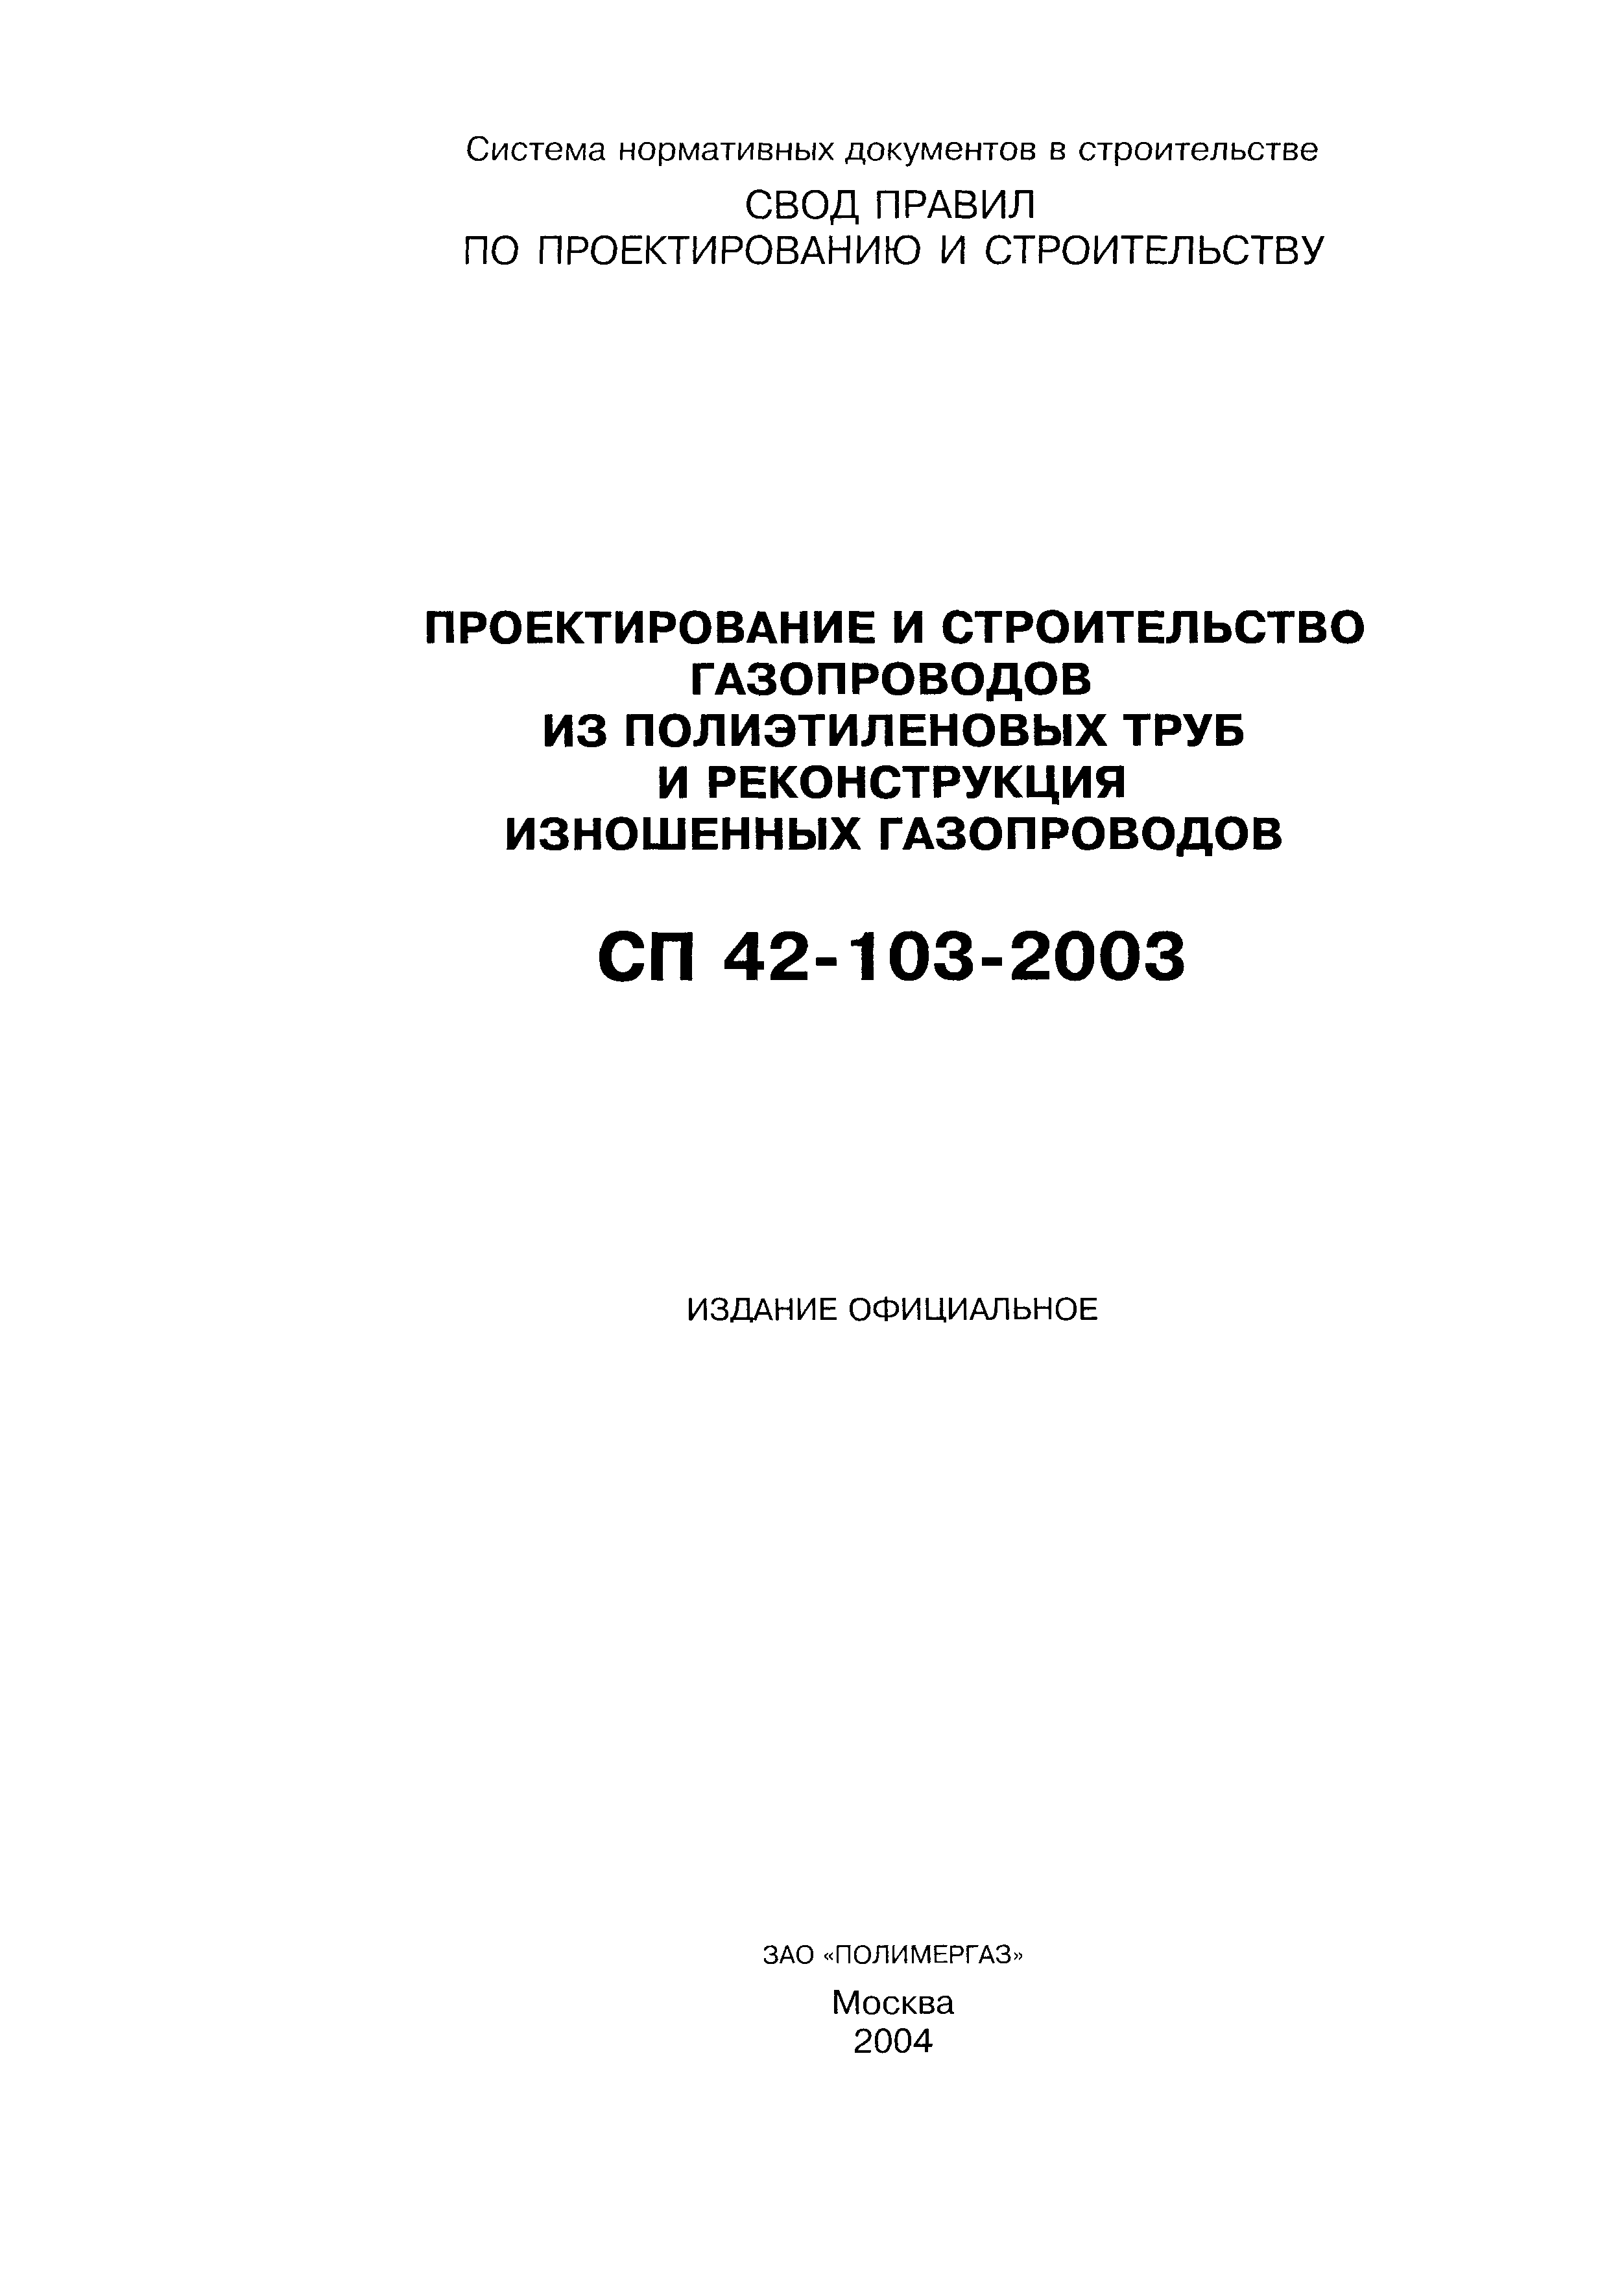 СП 42-103-2003